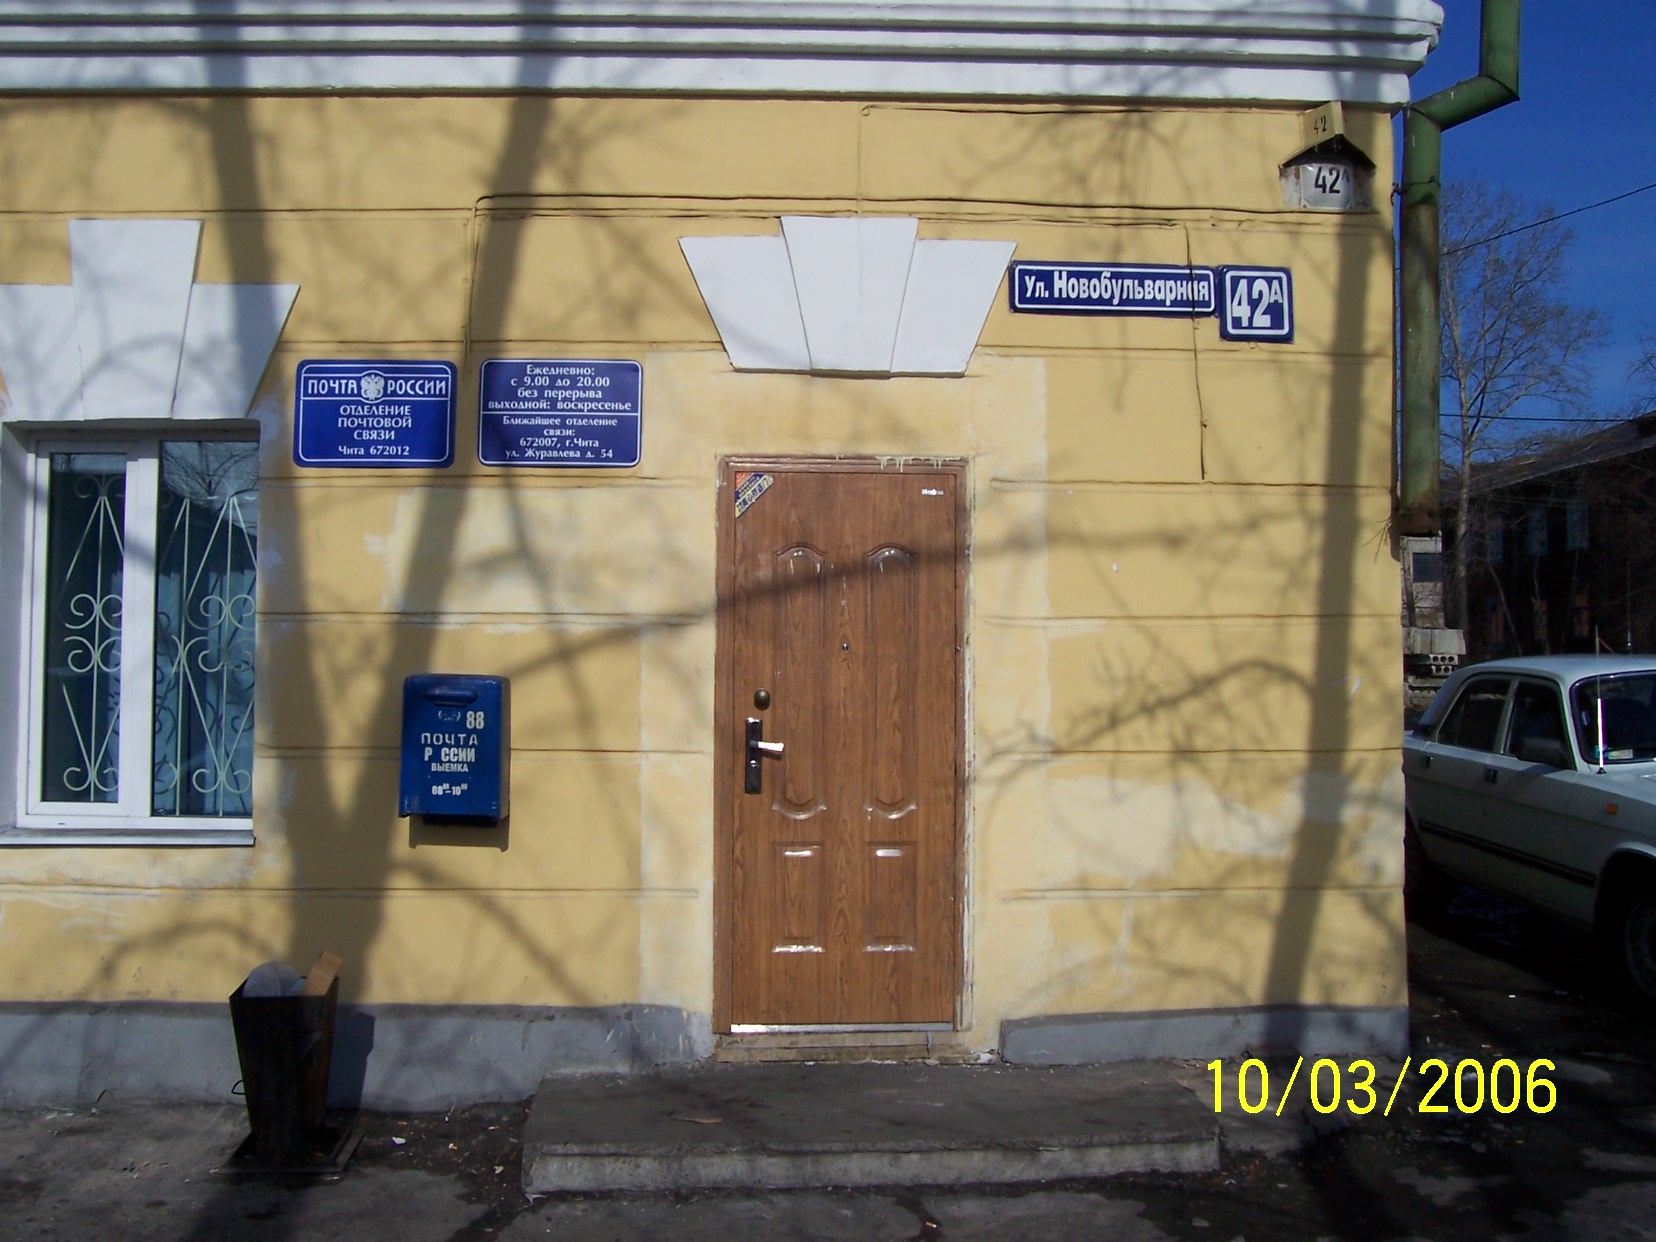 ВХОД, отделение почтовой связи 672012, Забайкальский край, Чита